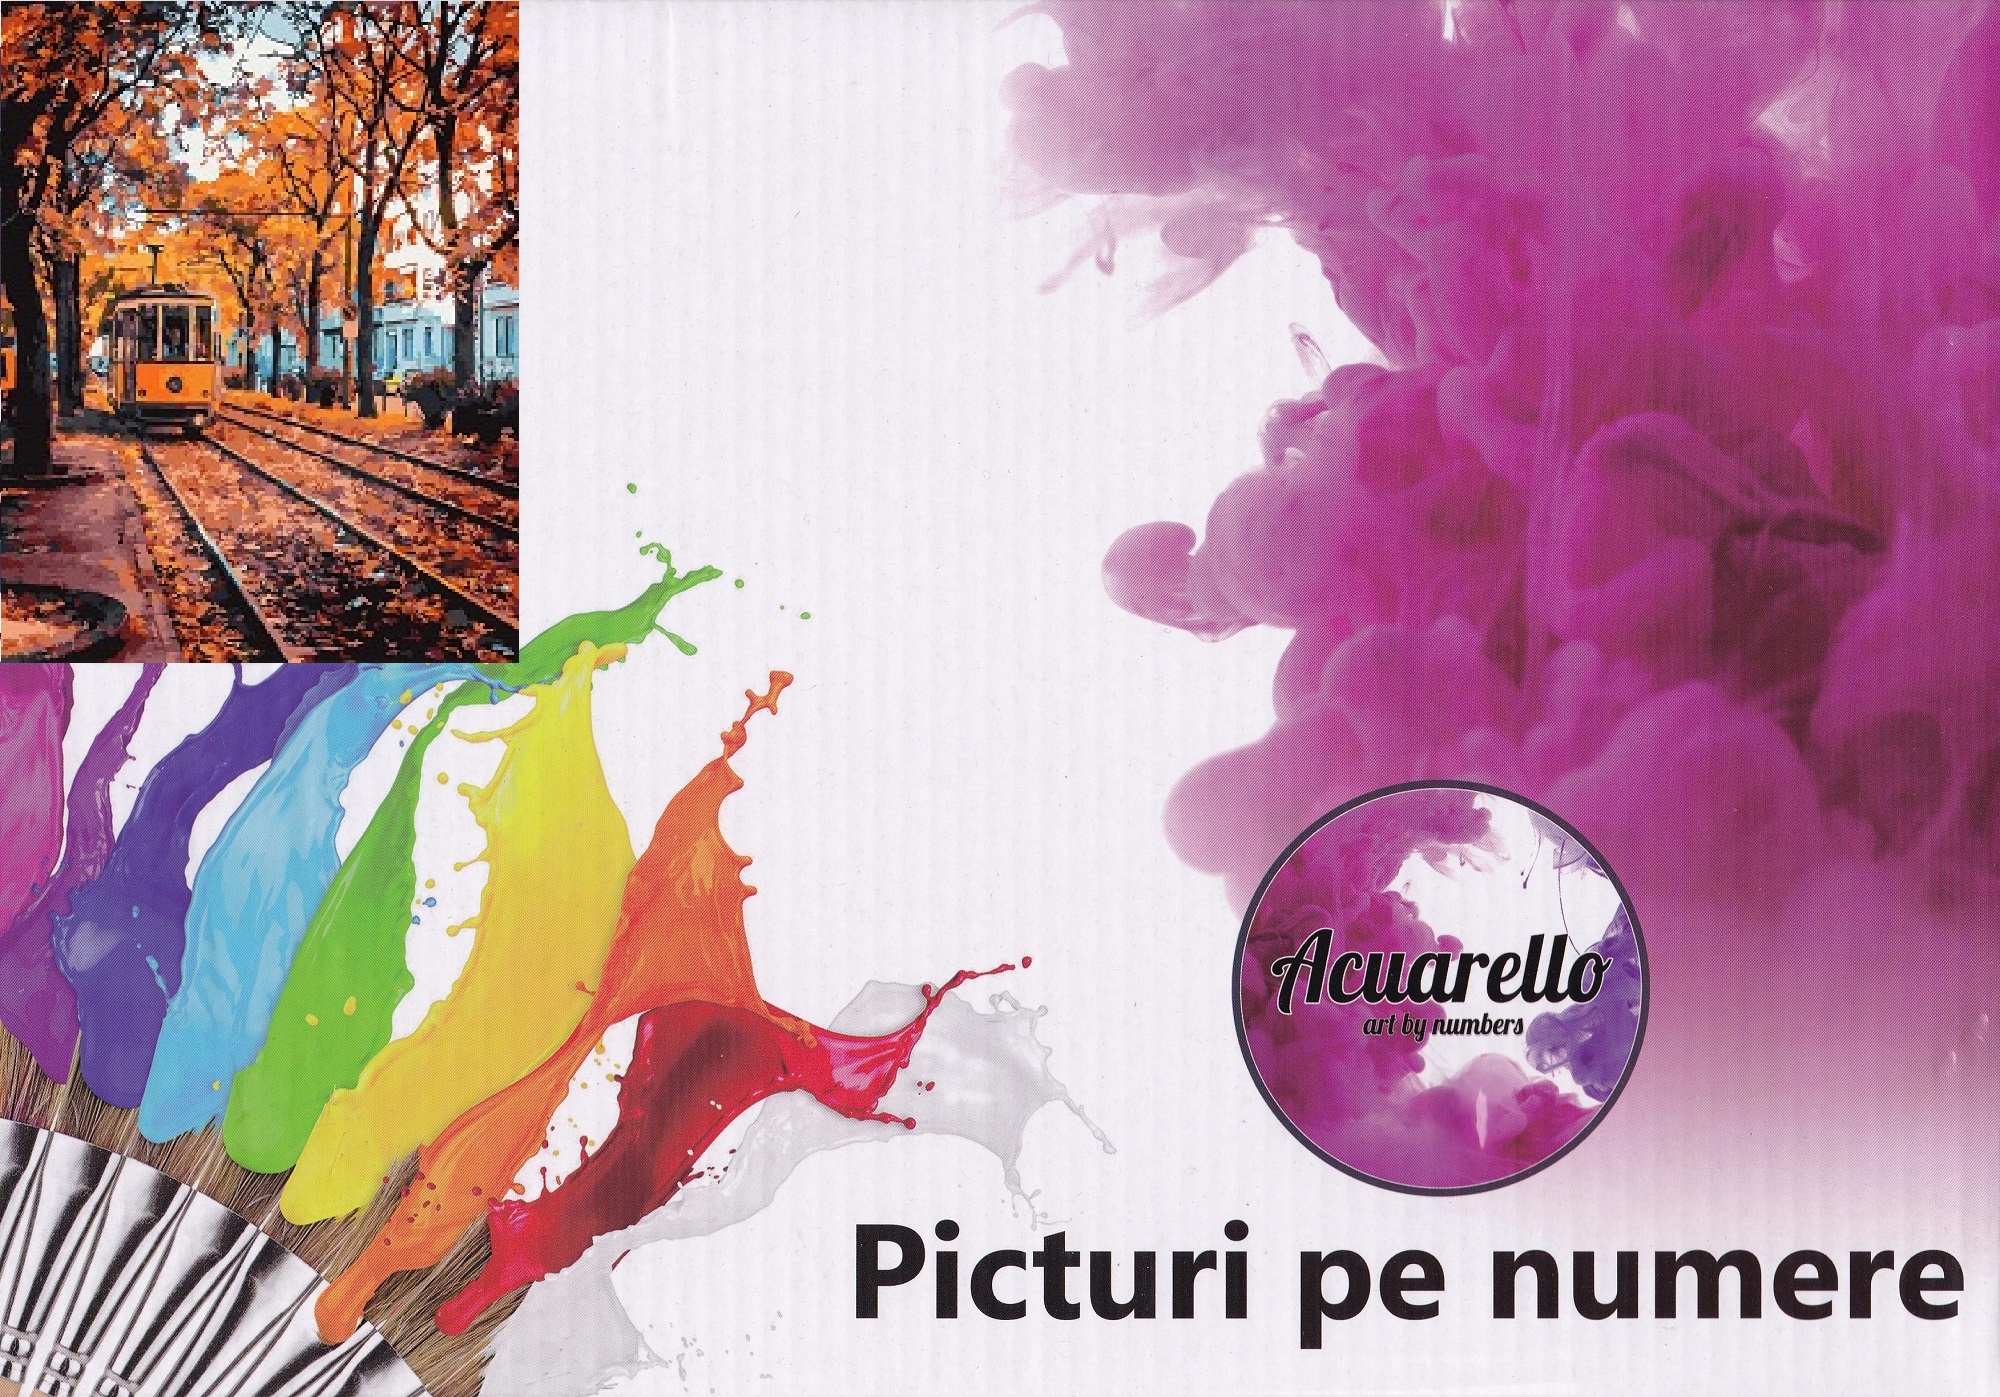 Pictura pe numere: Toamna in Bucuresti